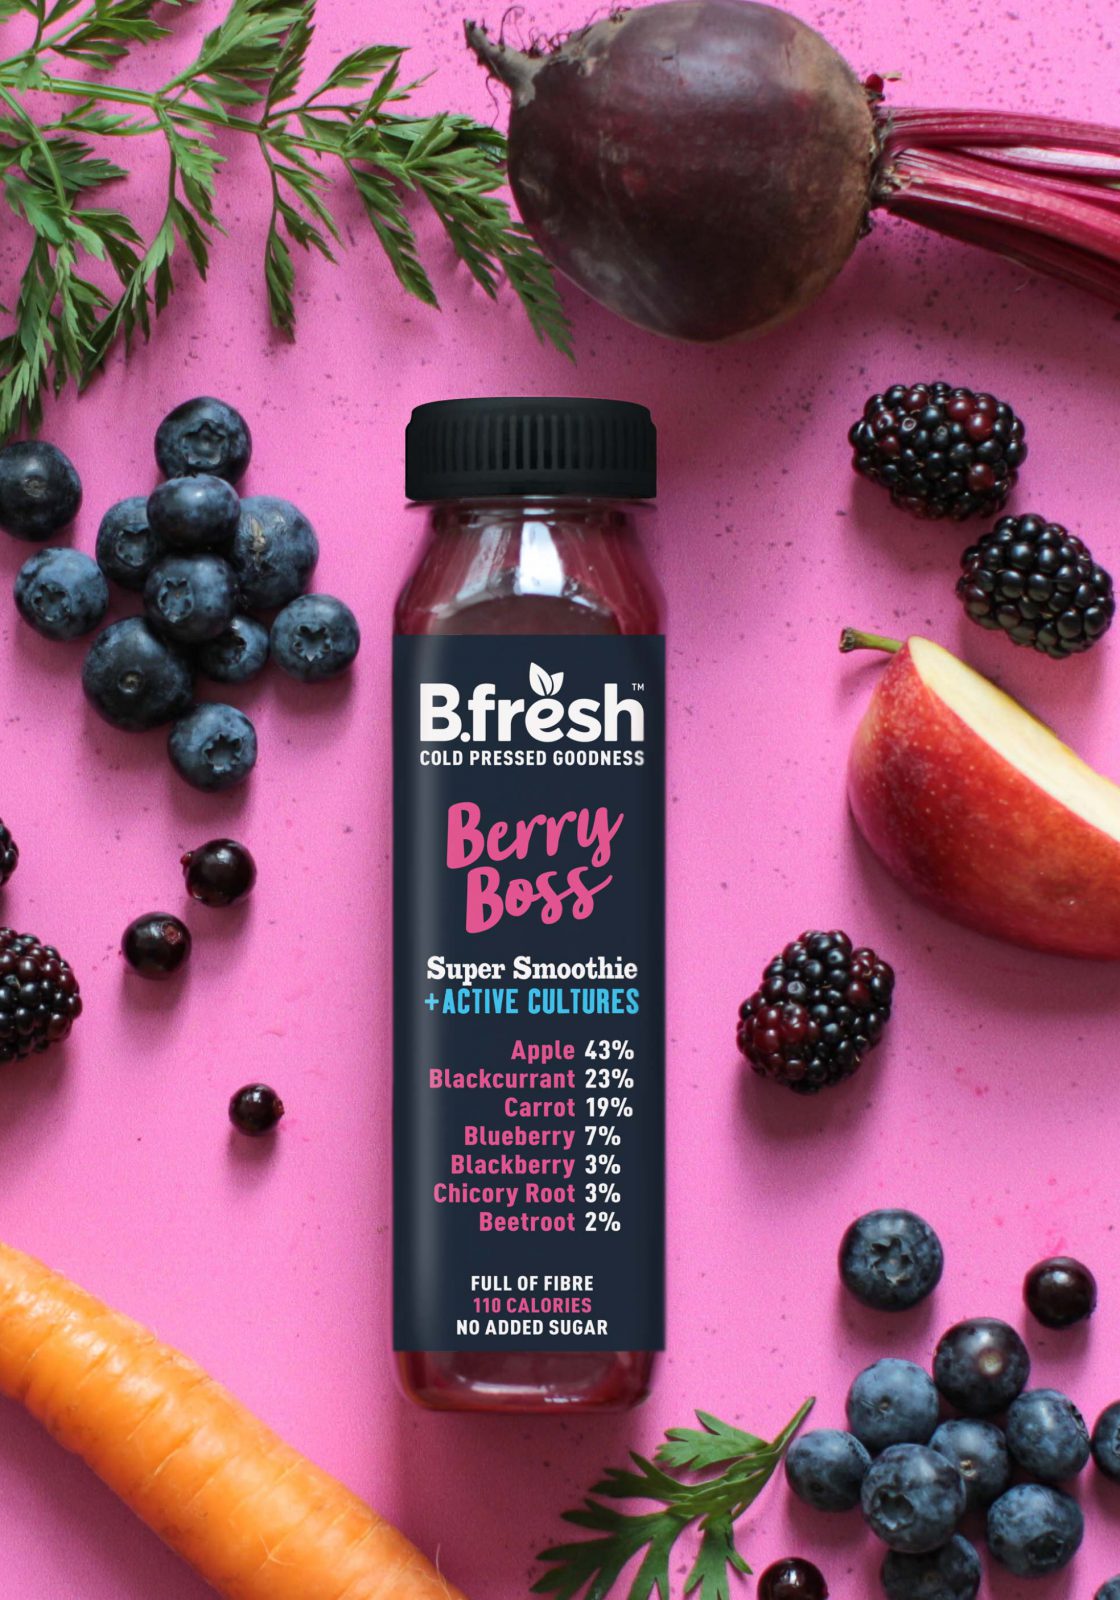 B.fresh Berry Boss